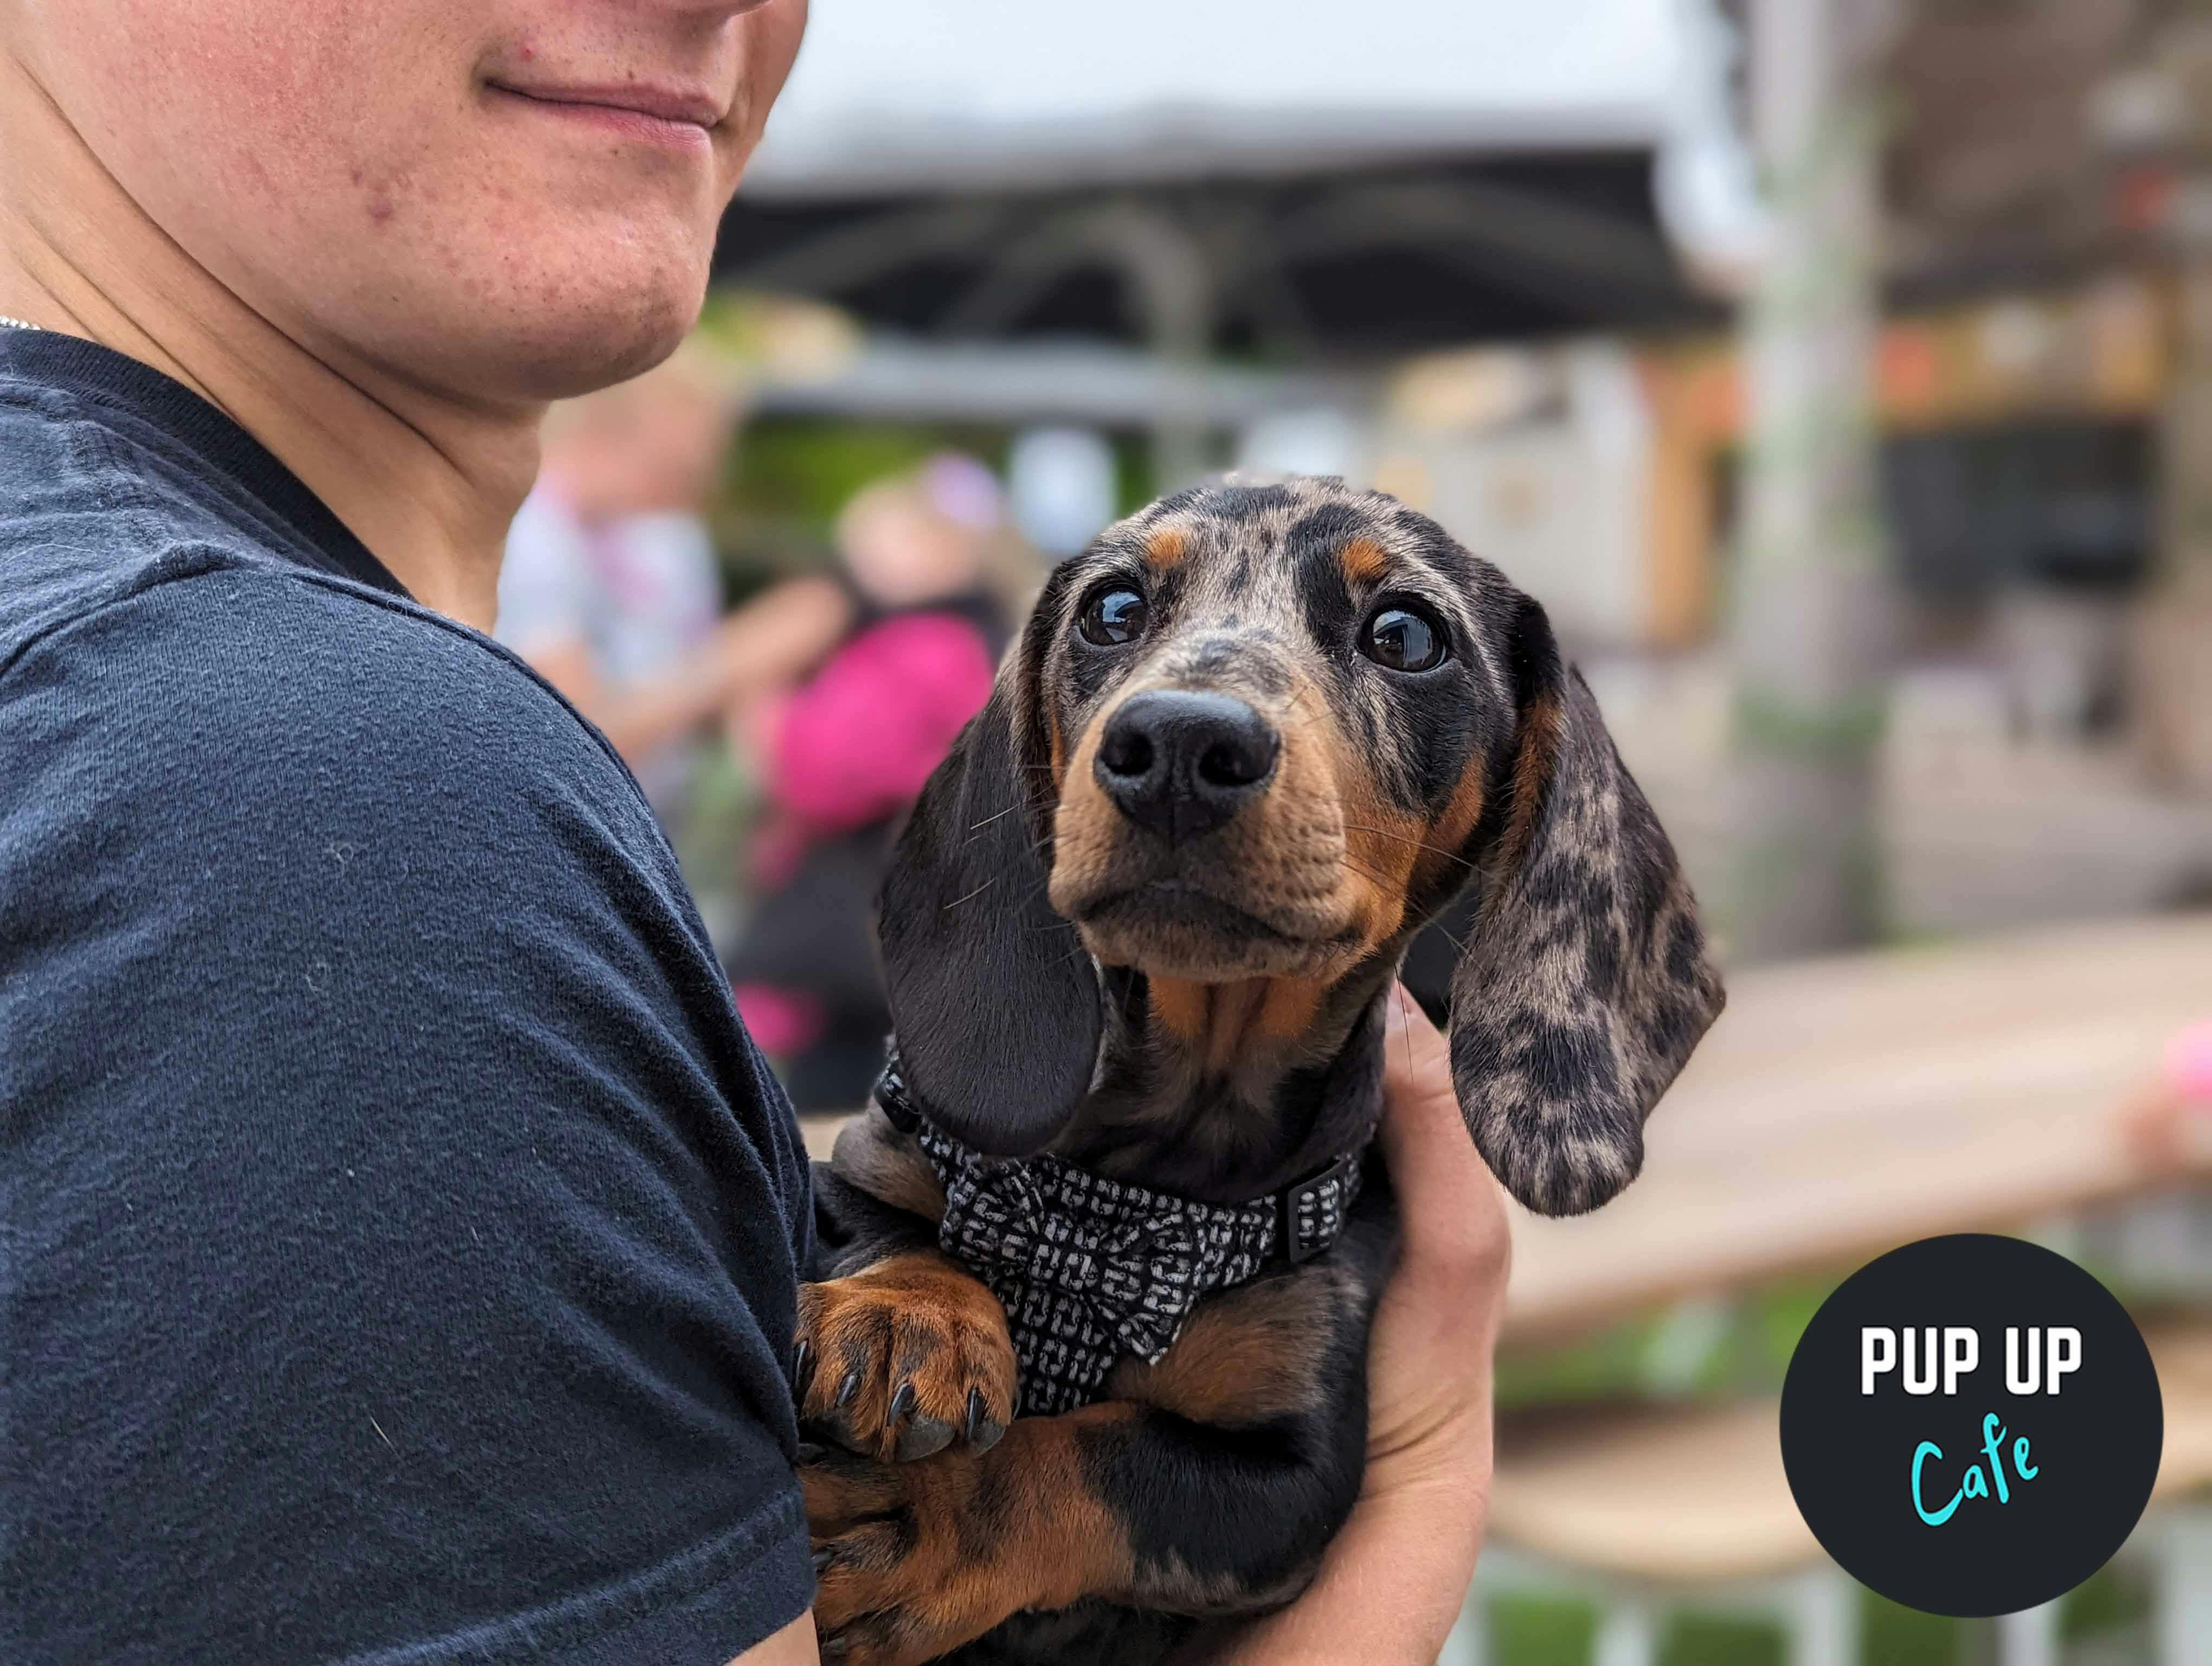 Pup Up Cafe x Revolución de Cuba host fun dog event for all breeds